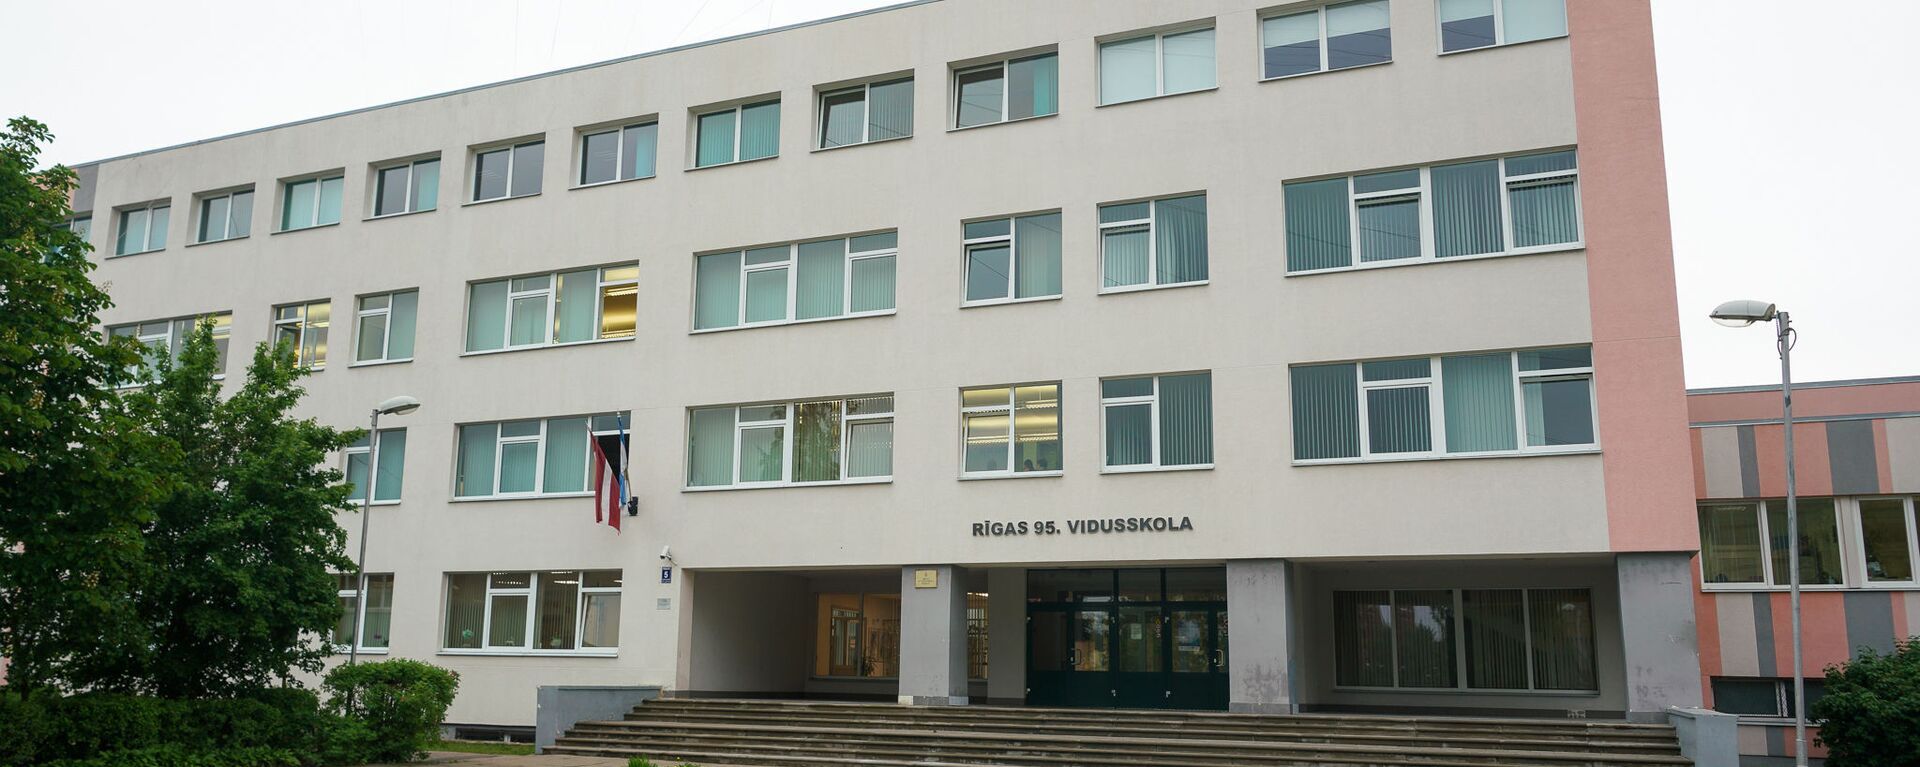 Здание 95-й Рижской средней школы - Sputnik Латвия, 1920, 20.08.2020